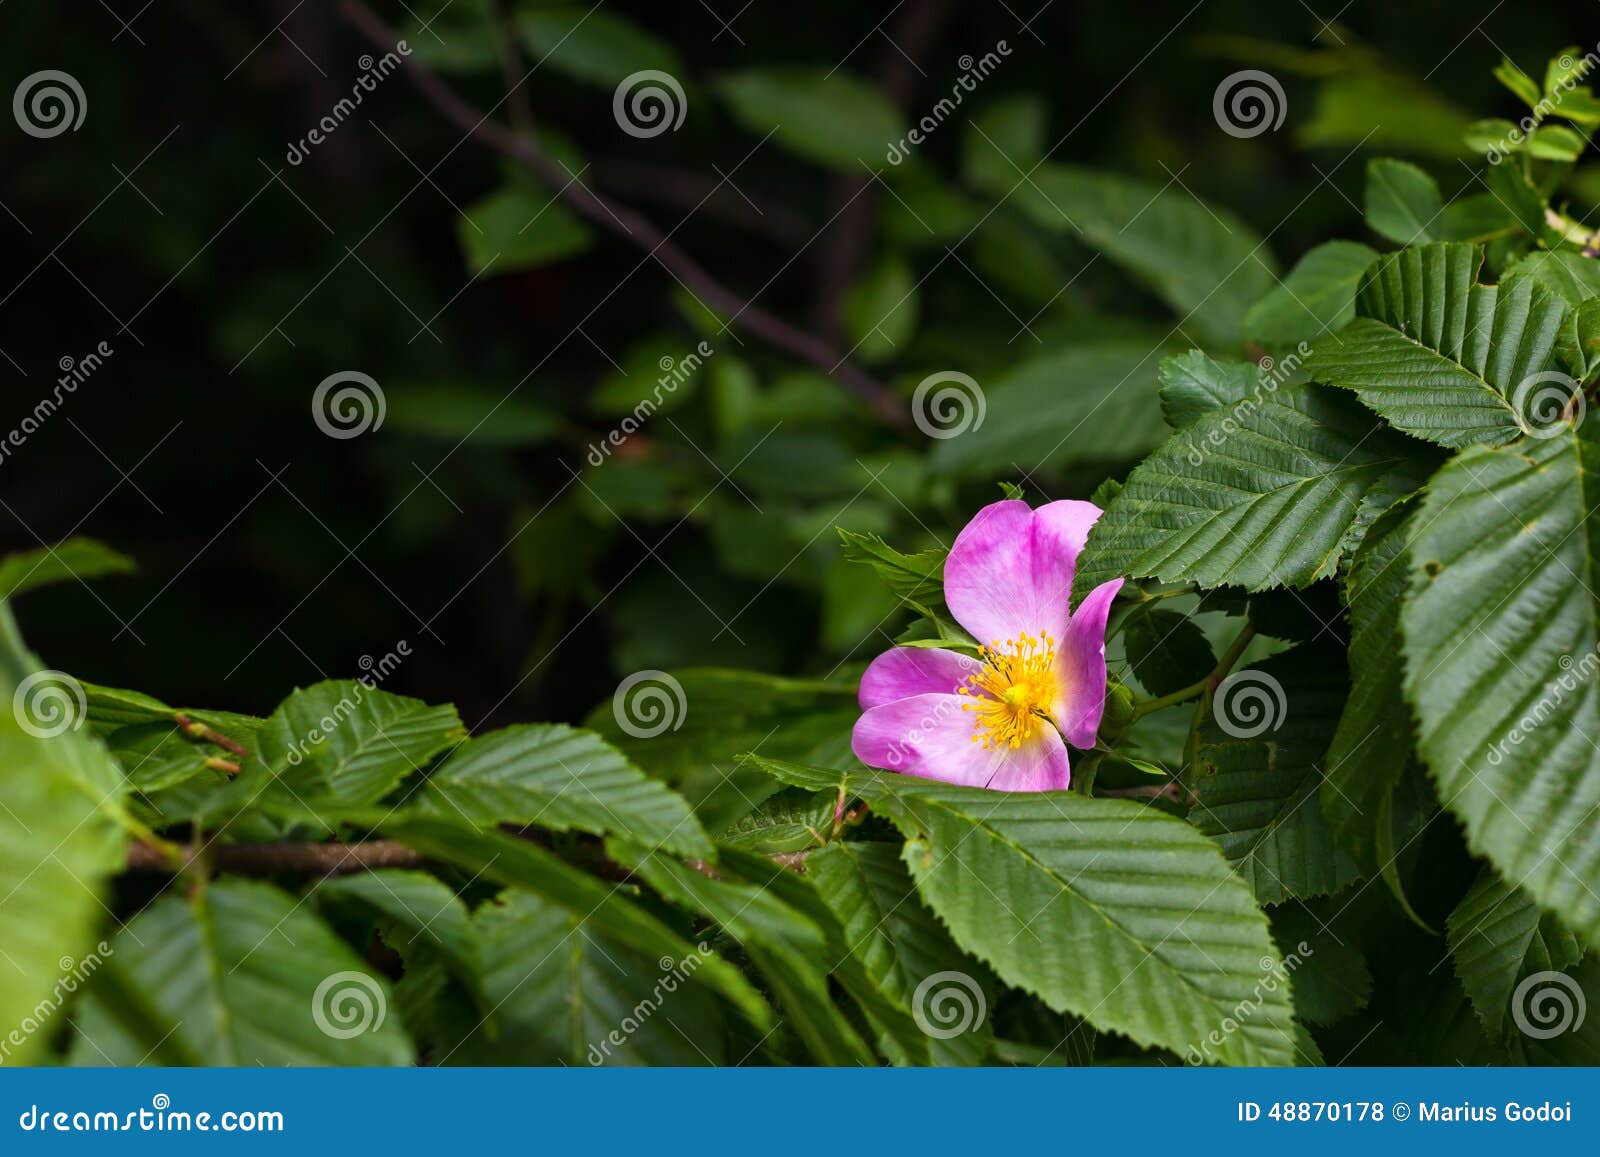 hipberry flower